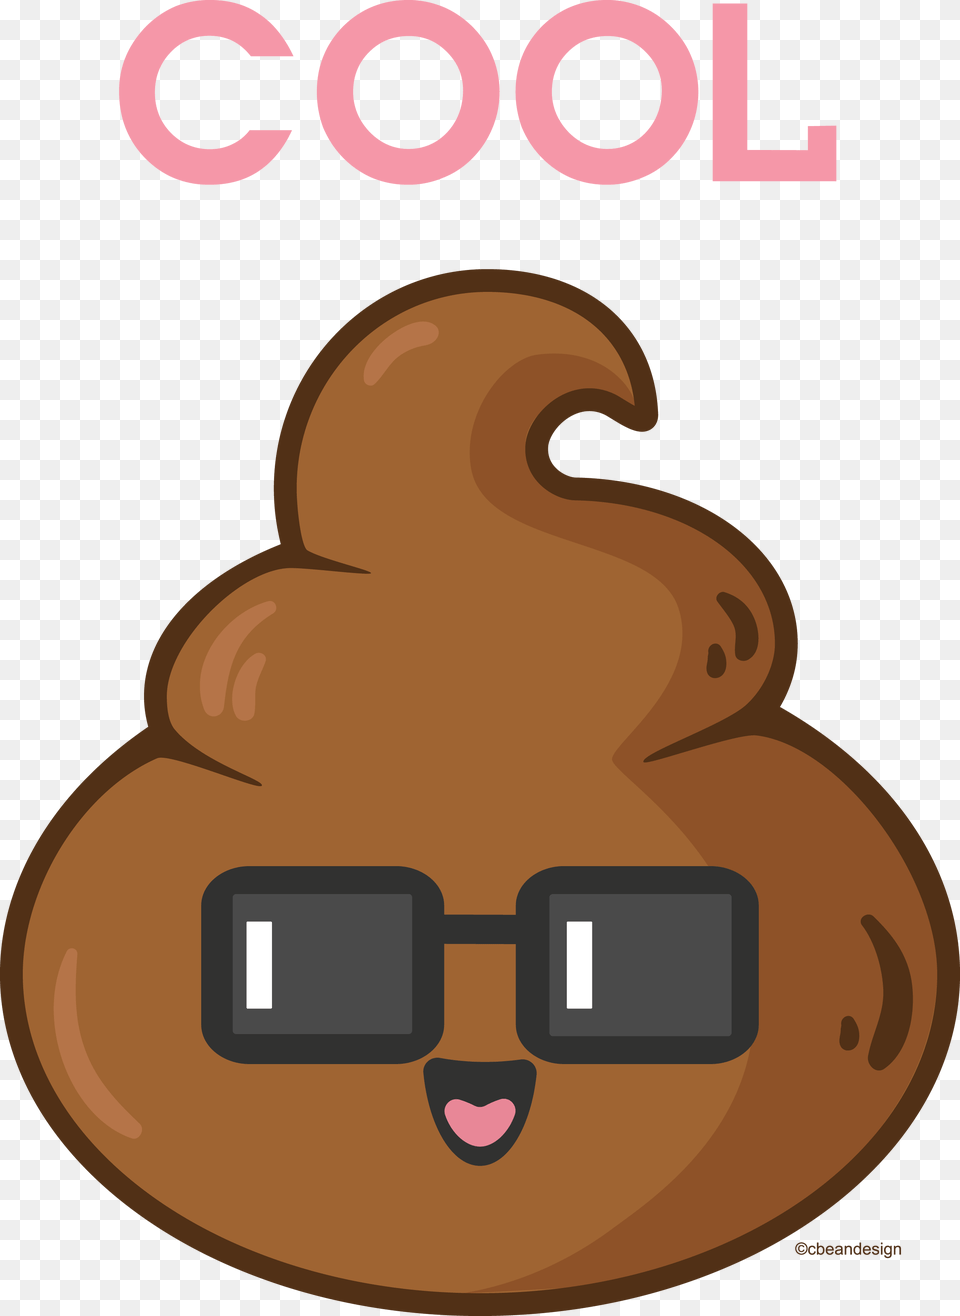 One Cool Poo Tootie Poop Emoji Emoji And Cool Stuff, Food, Sweets, Cookie Png